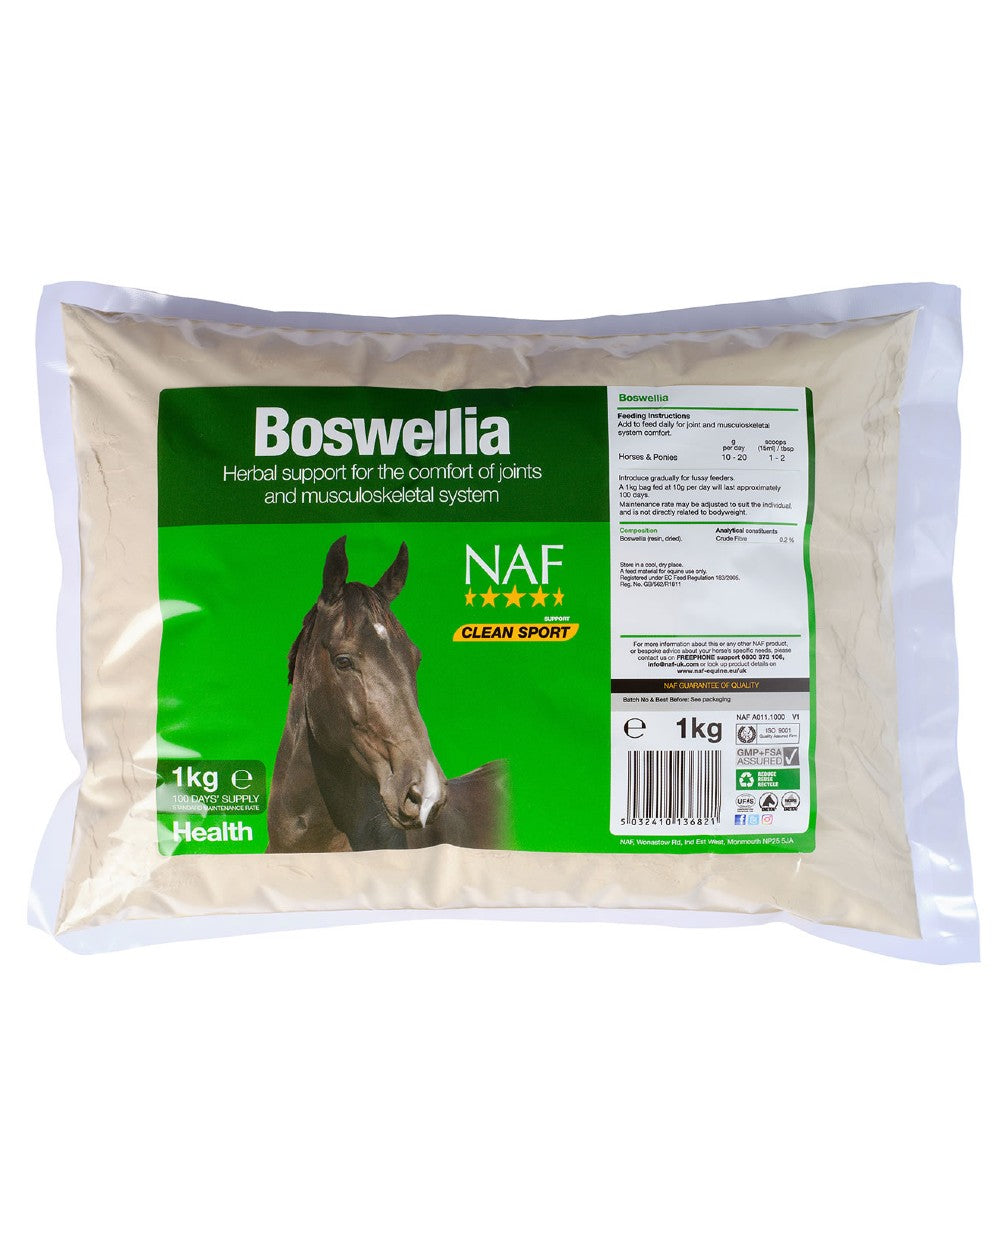 NAF Boswellia 1kg on white background